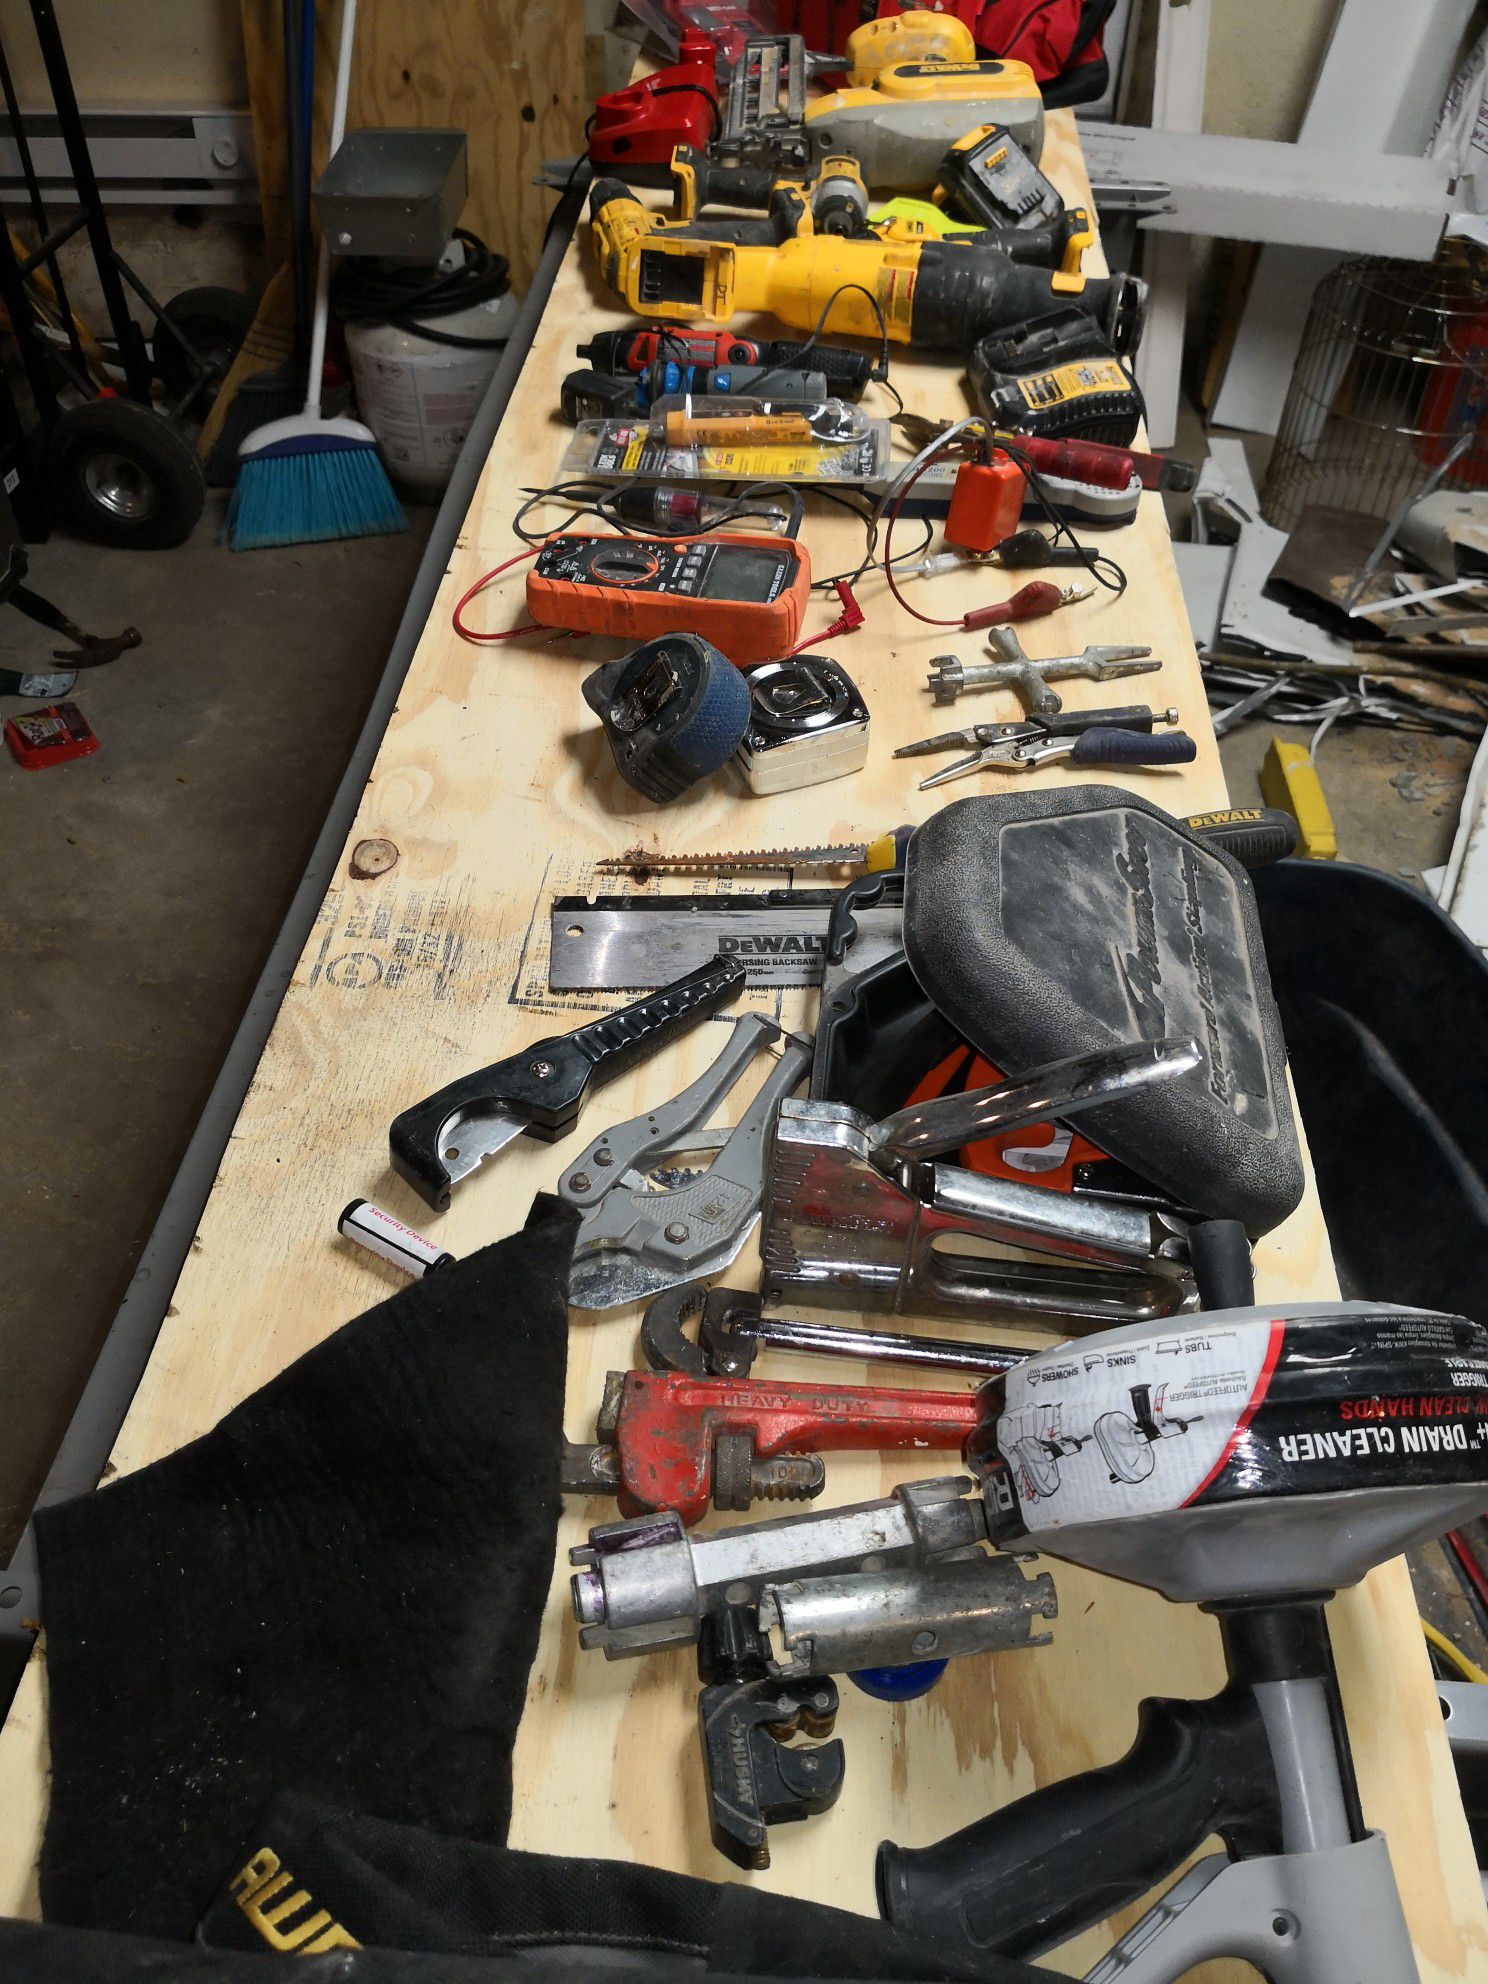 DeWalt 20v tool maintenance kit everything you need